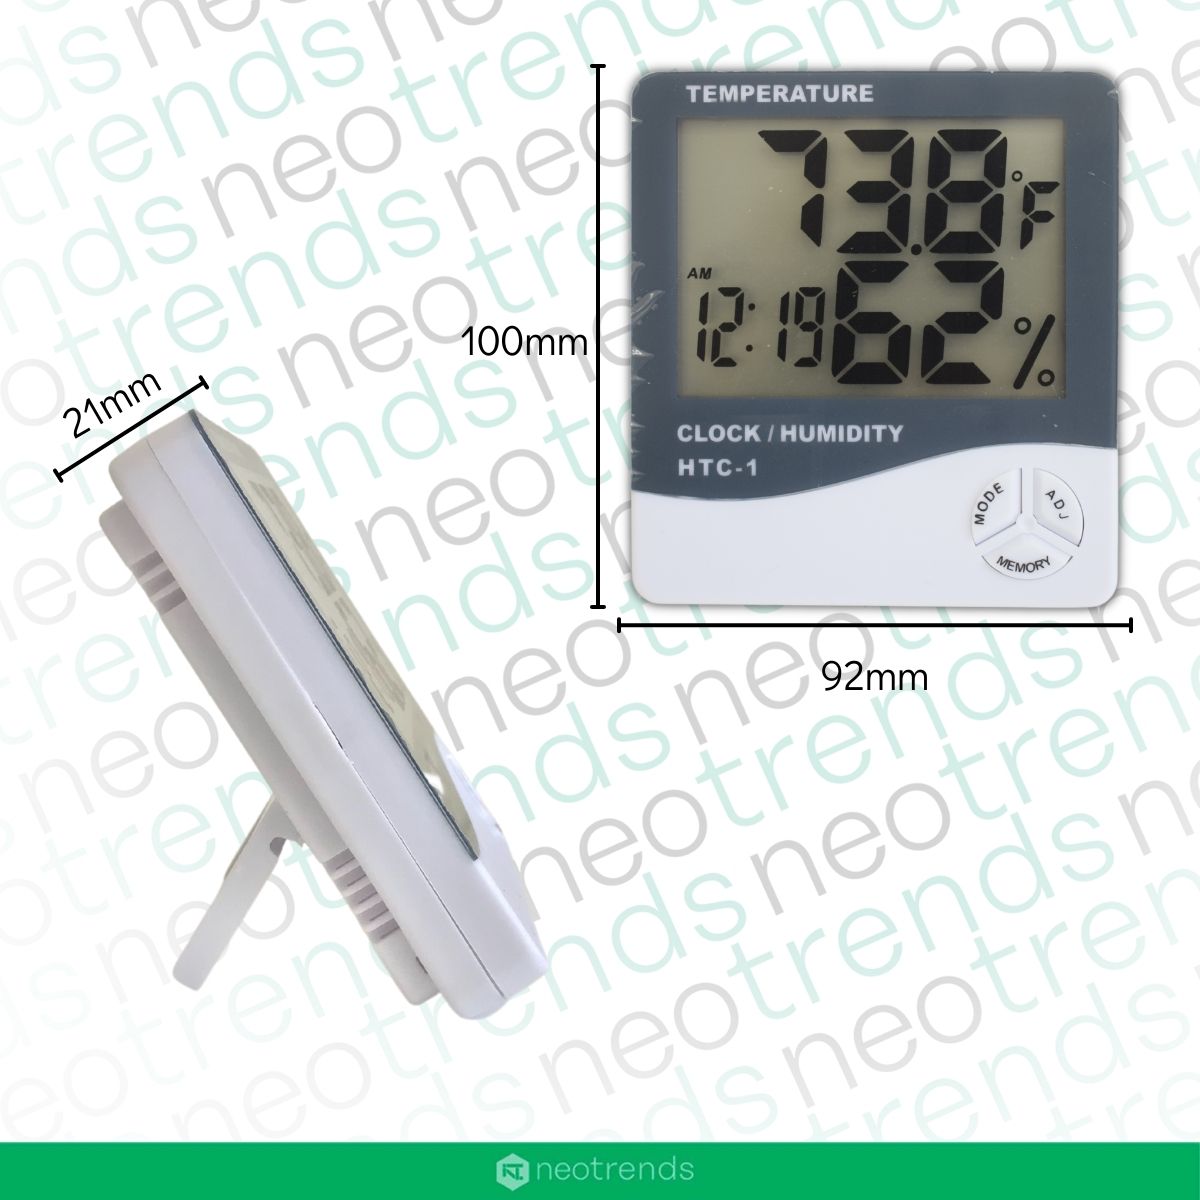 higrometro medidor temperatura humedad precios online